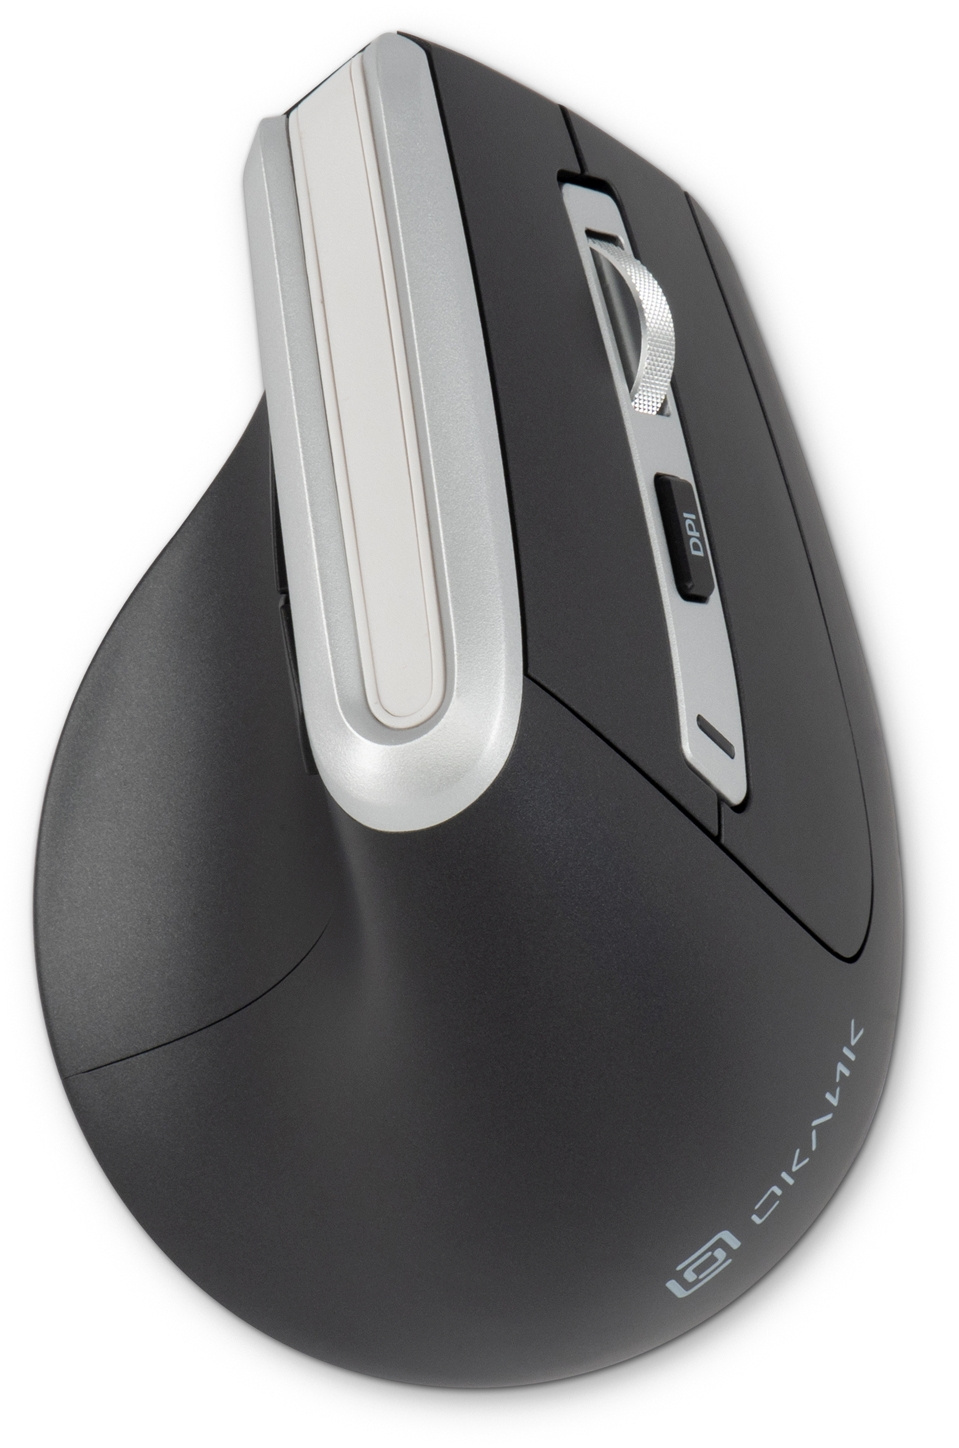 Мышь Оклик 991MW серый оптическая (2400dpi) silent беспроводная BT/Radio USB для ноутбука (7but)